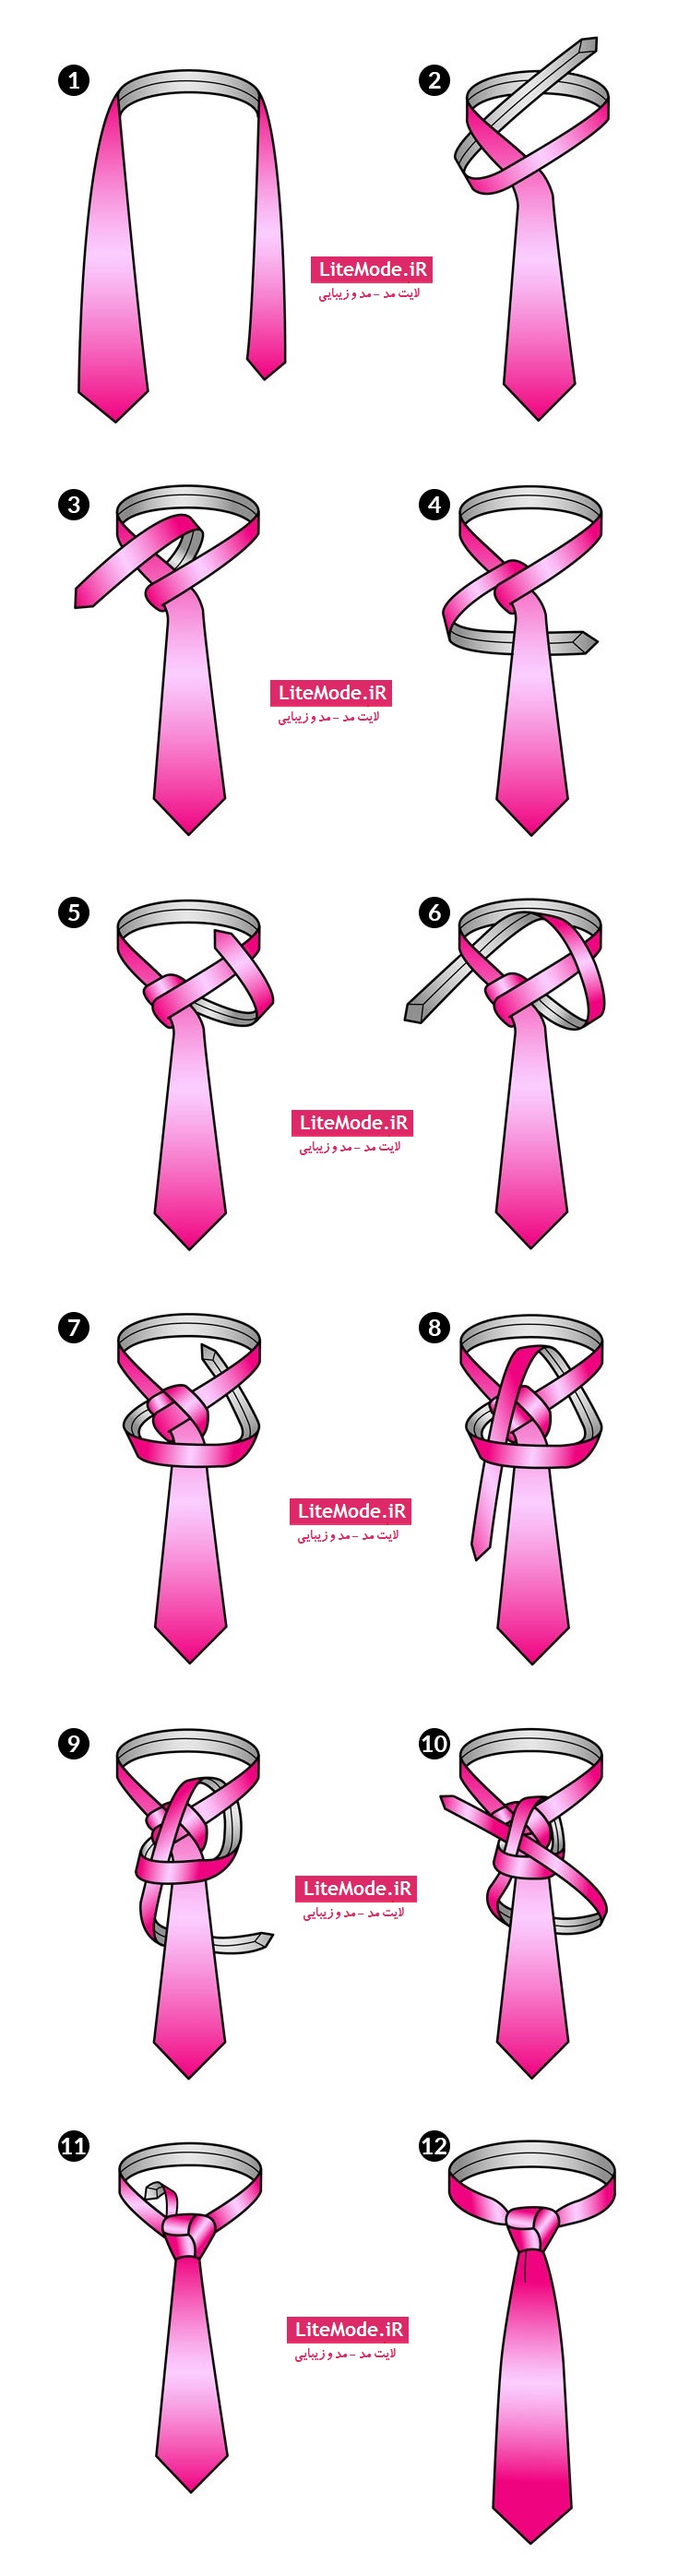 کراوات را خودتان ببندید / آموزش خیلی ساده بستن کراوات 